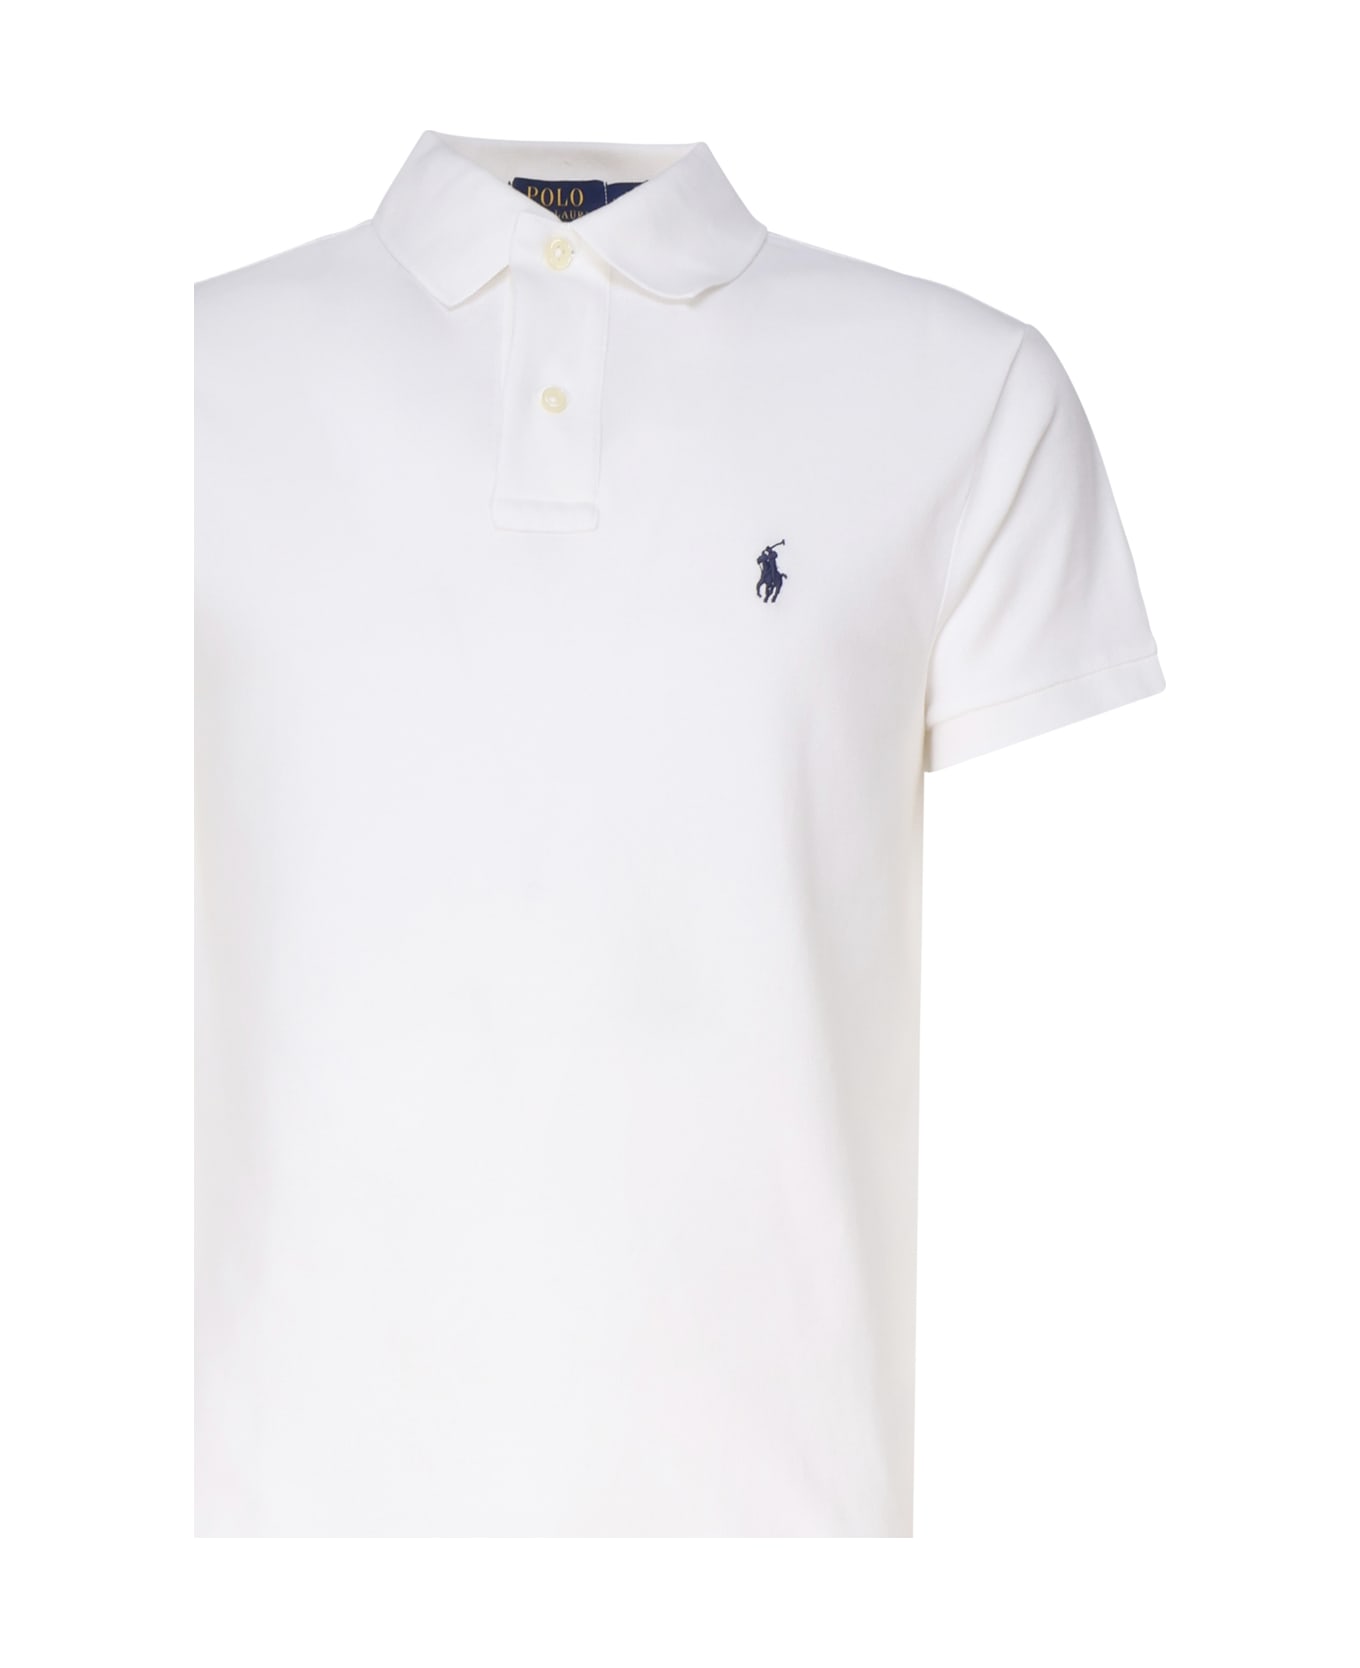 Polo Ralph Lauren Polo Shirt With Logo - White